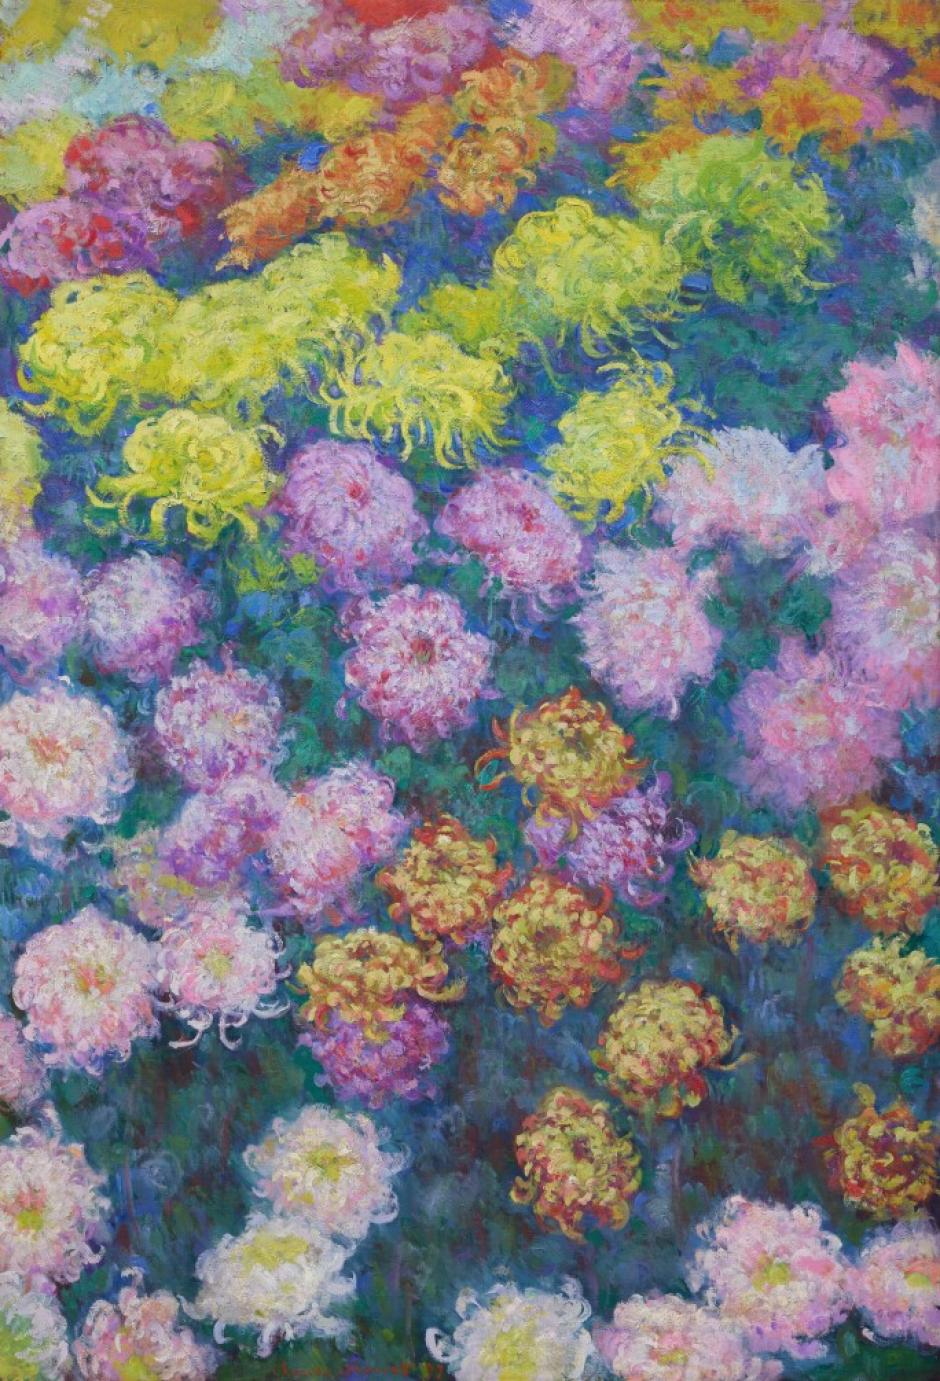 'Massif de chrysanthemes', una de las obras de Monet subastadas por Sotheby's